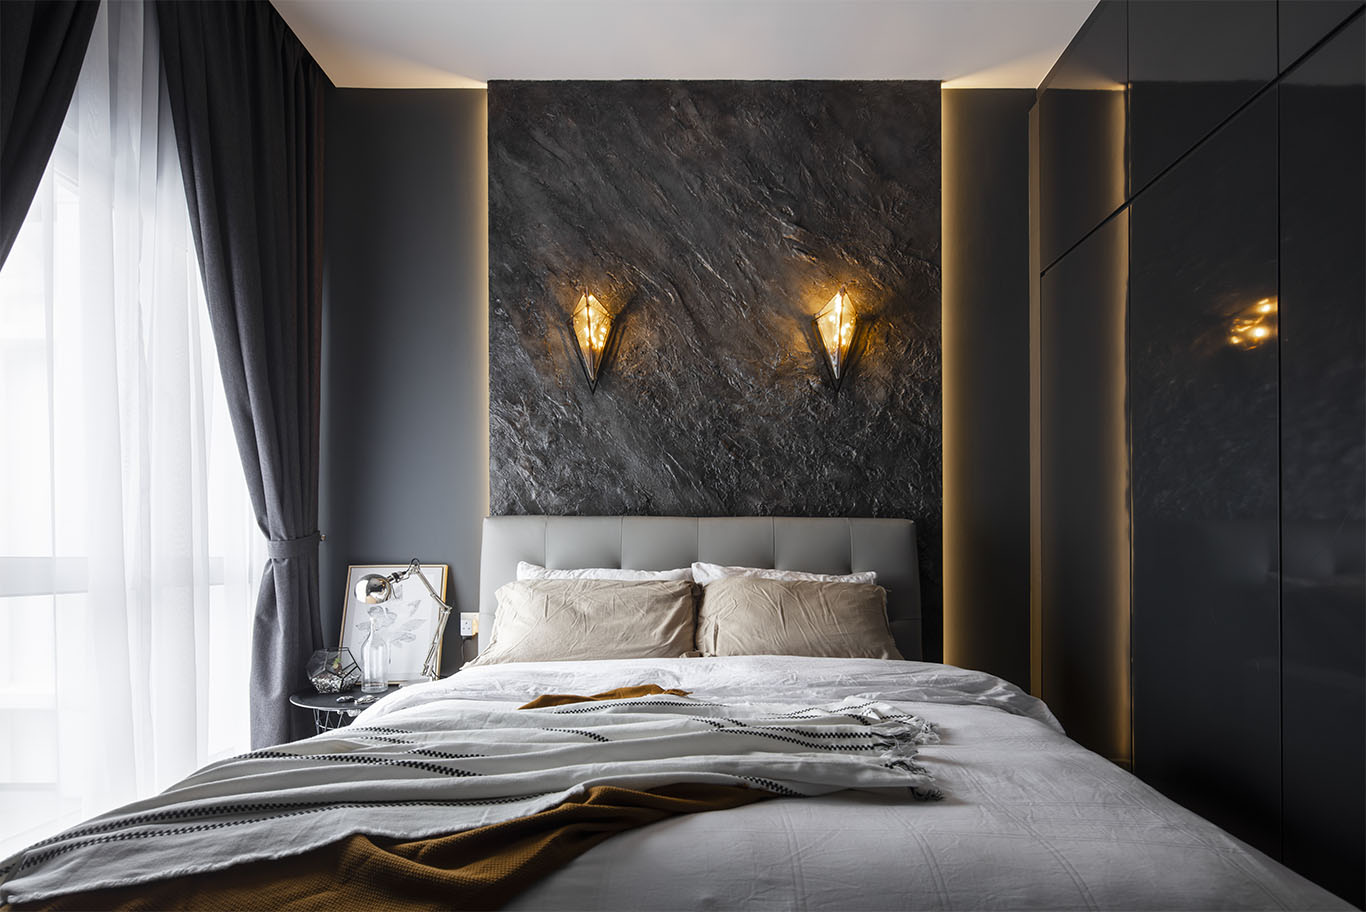 Grande Rhapsody dark modern minimalist bedroom Mieux interior design